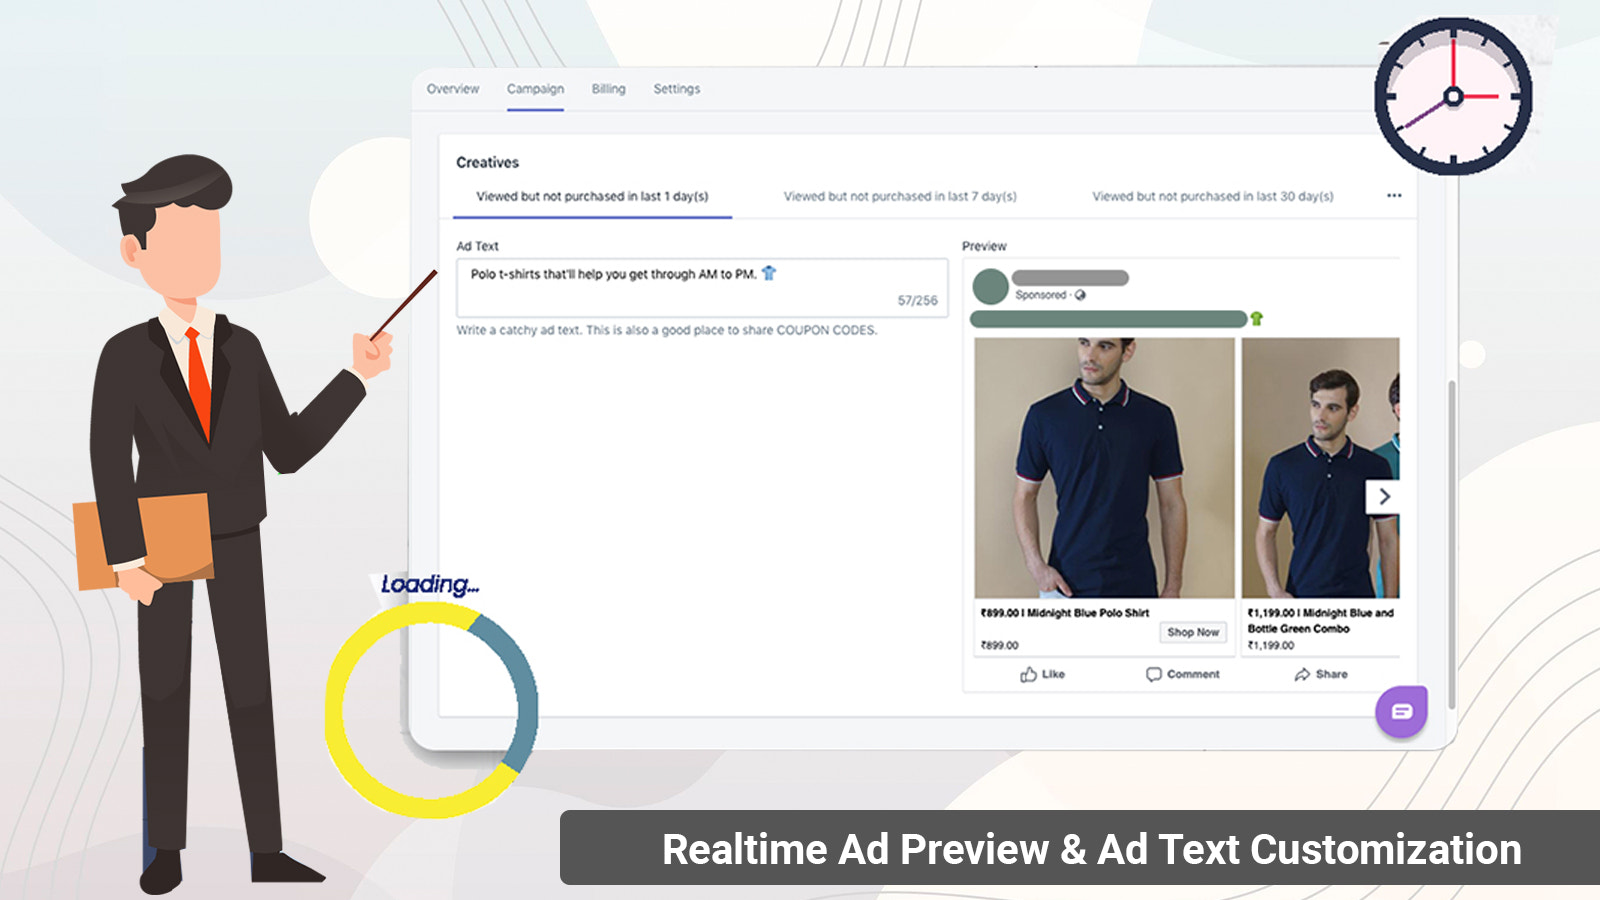 Vista previa de anuncios en tiempo real y personalización de texto de anuncios. Sincronización en vivo del catálogo